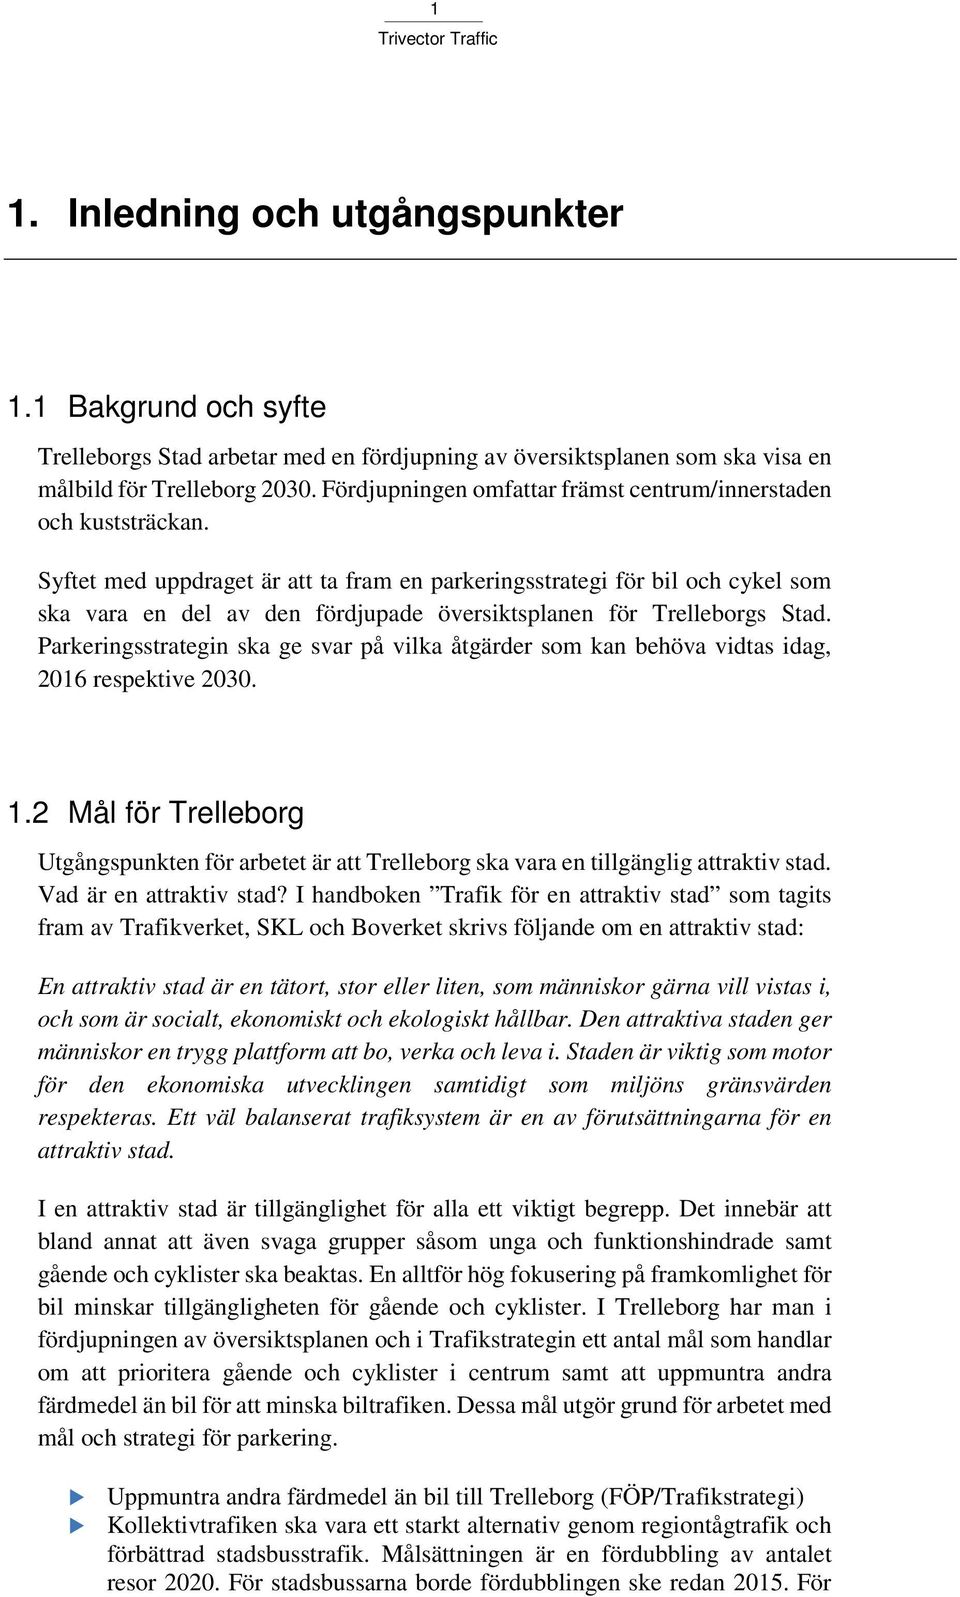 Syftet med uppdraget är att ta fram en parkeringsstrategi för bil och cykel som ska vara en del av den fördjupade översiktsplanen för Trelleborgs Stad.